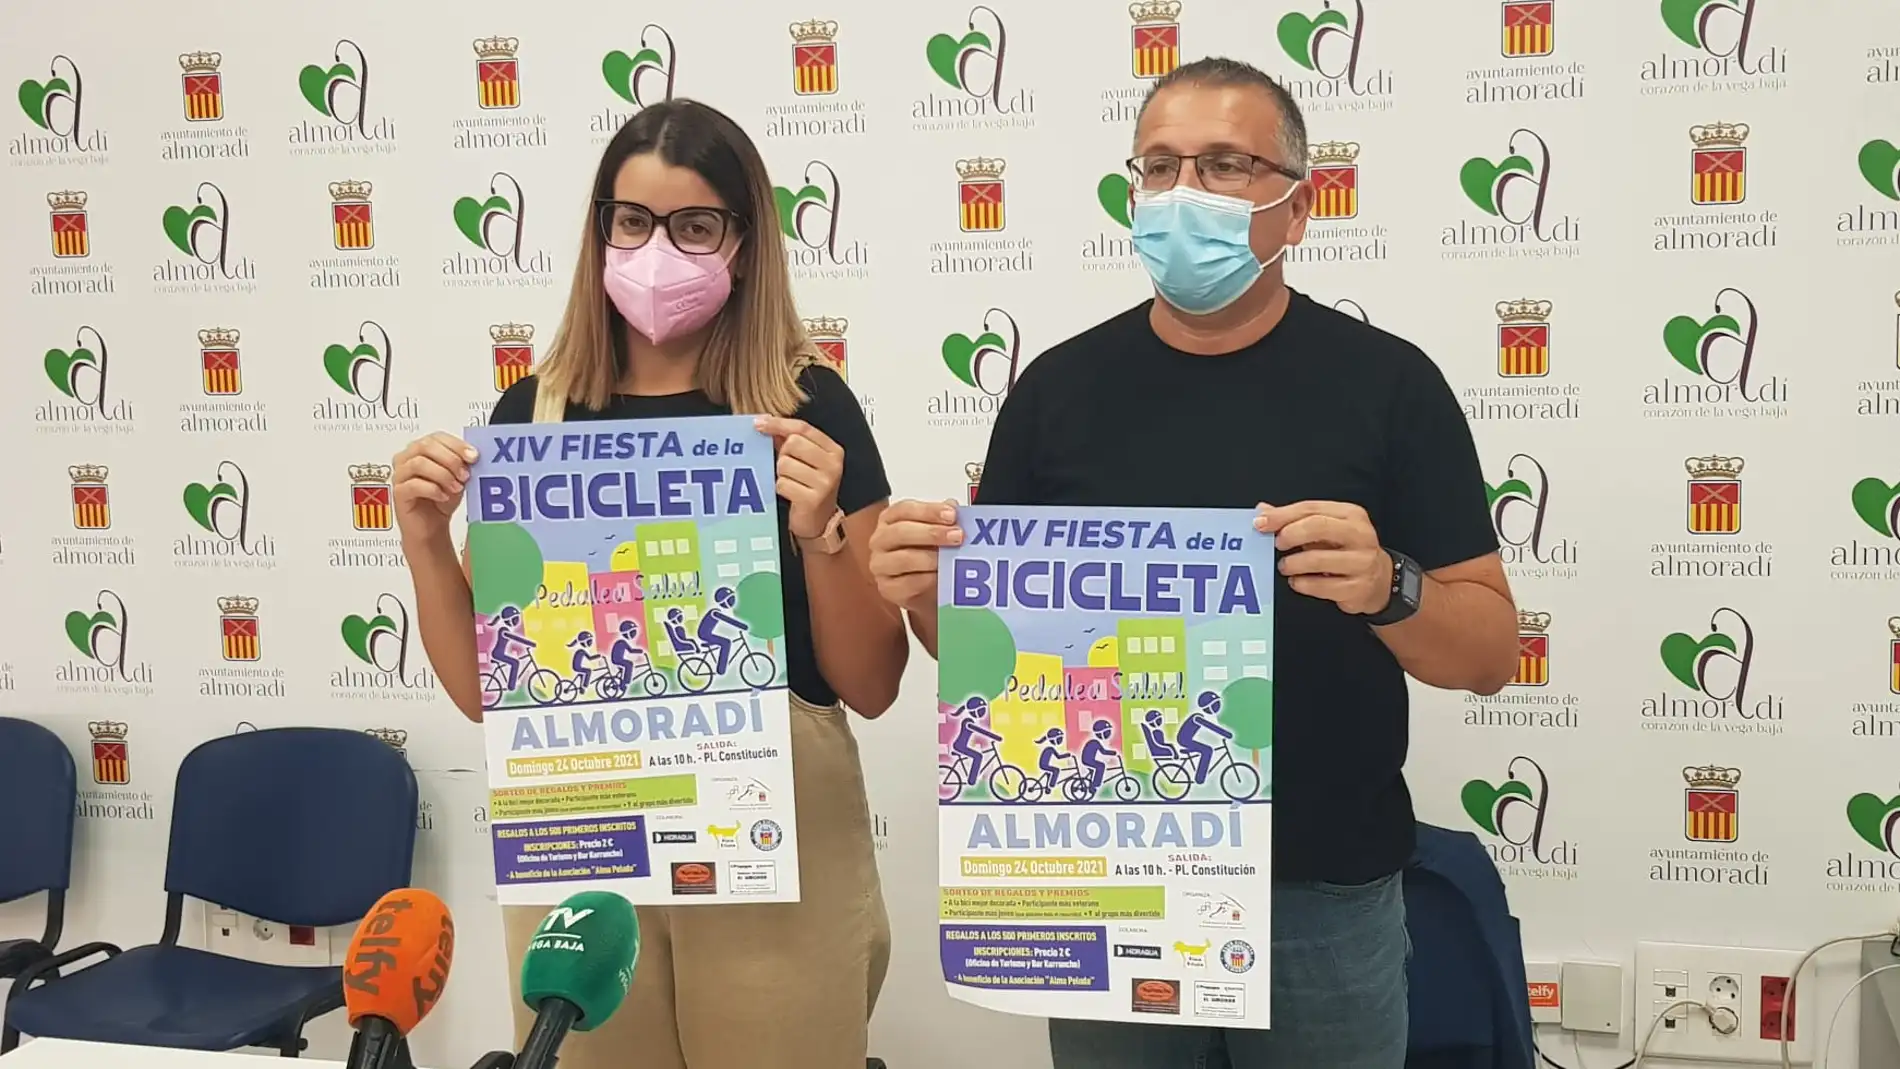 Vuelve la XIX Fiesta de la Bici a Almoradí el próximo 24 de octubre 